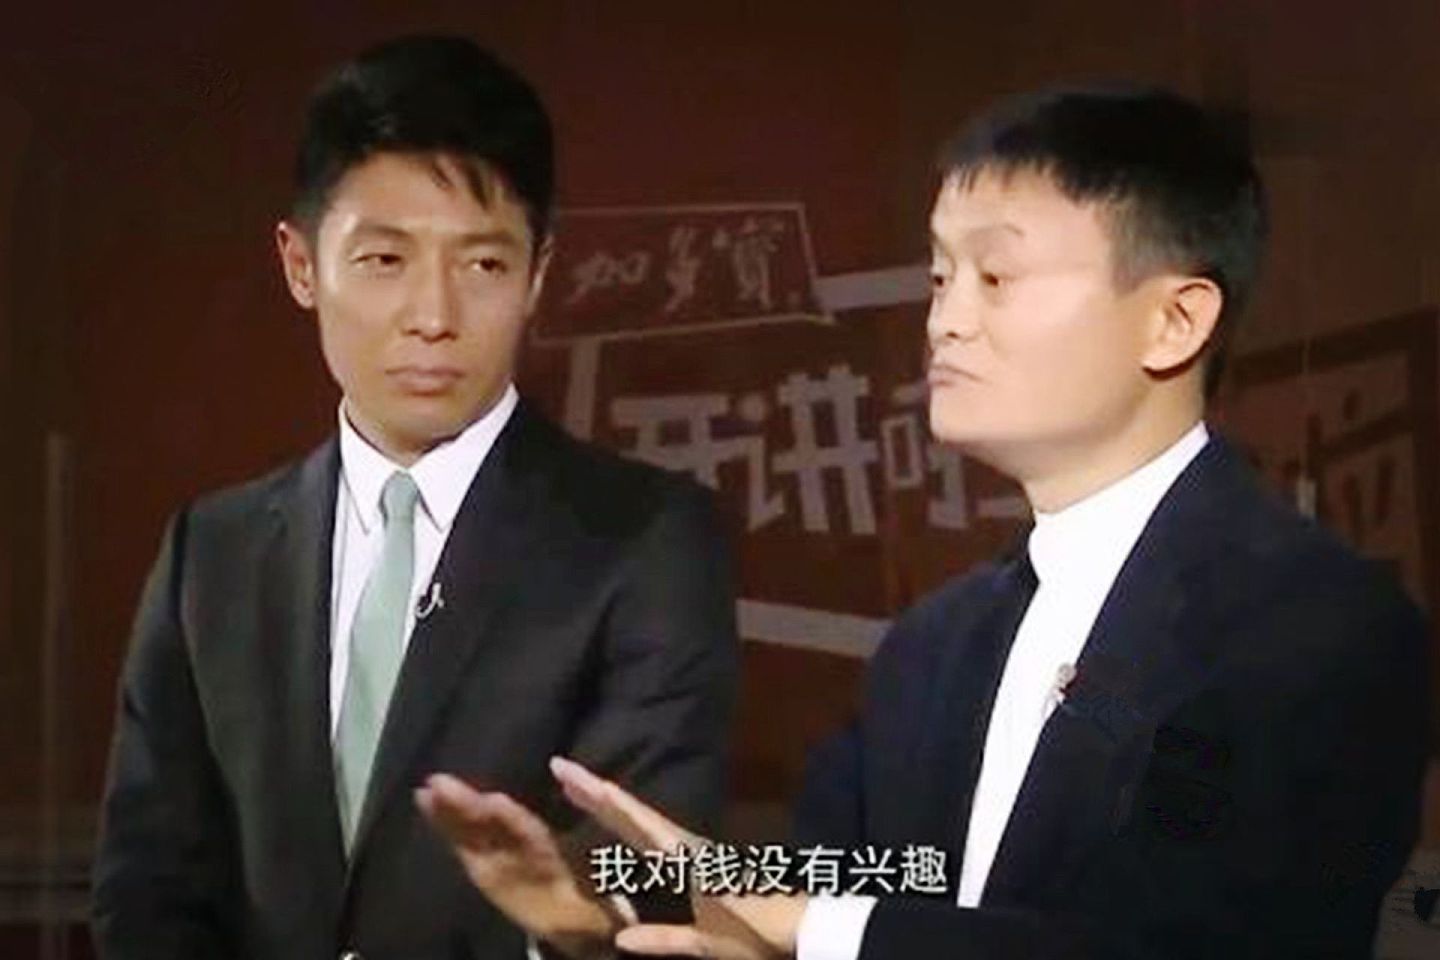 马云此前参加中国央视《开讲啦》节目时表示，他自己对钱没有兴趣，引发不少争论。（中国央视截图）